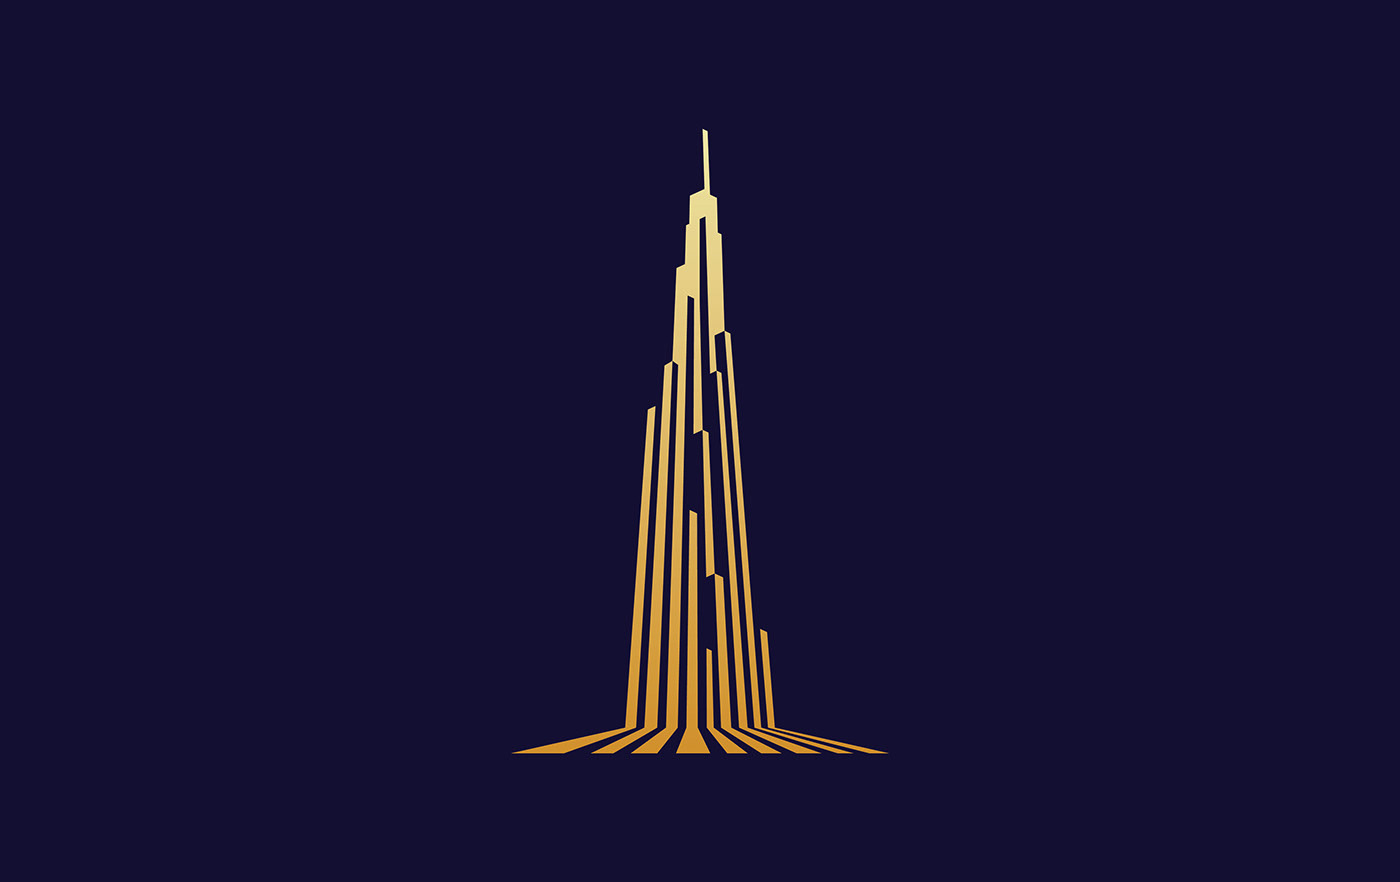 branding  logo identity vietnam Skyview tower iconic saigon Landmark realestate